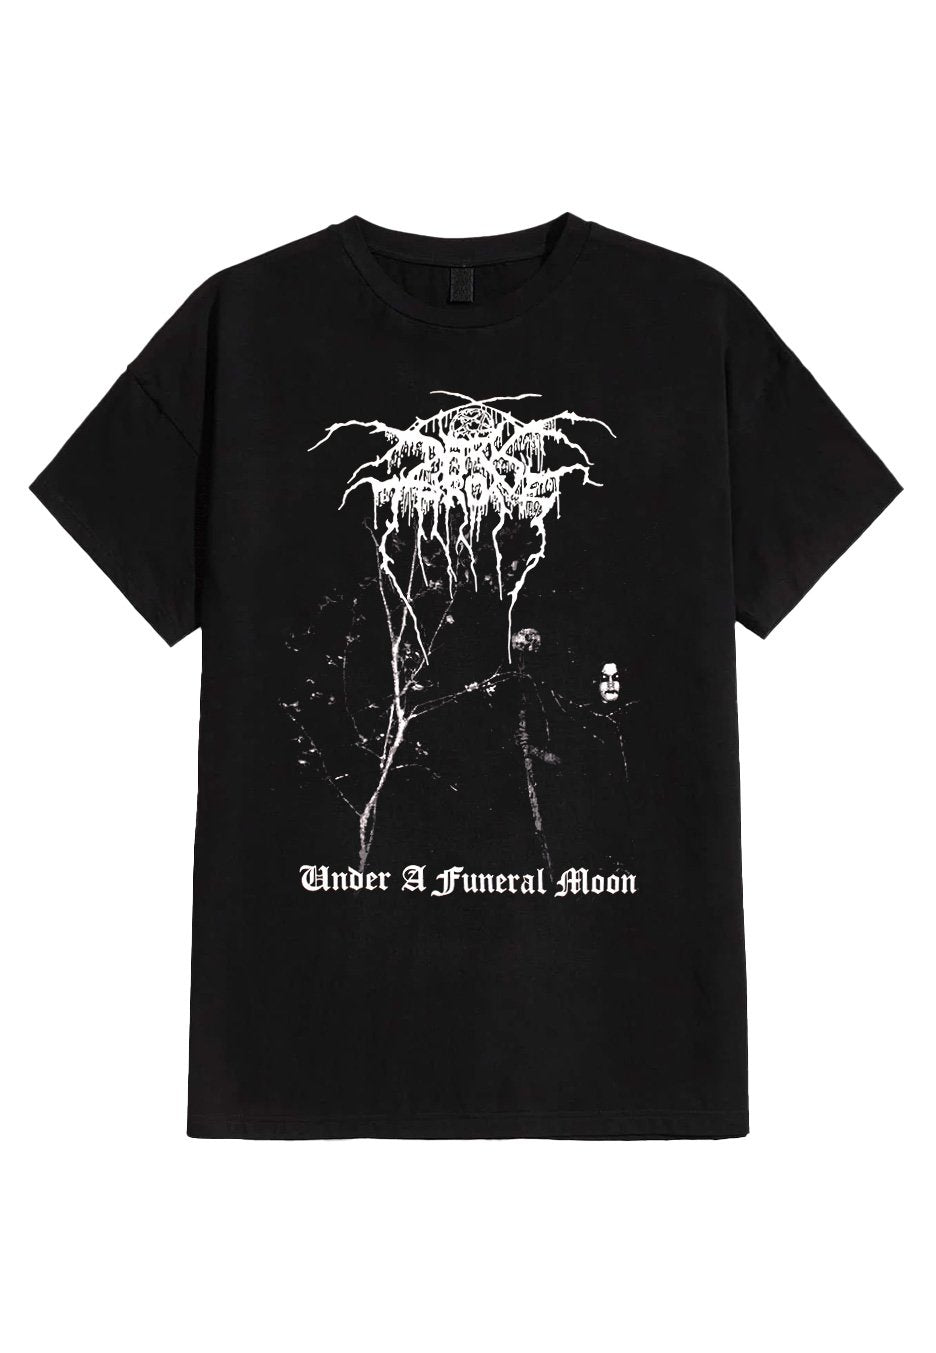 Darkthrone - Under A Funeral Moon / Album - T-Shirt